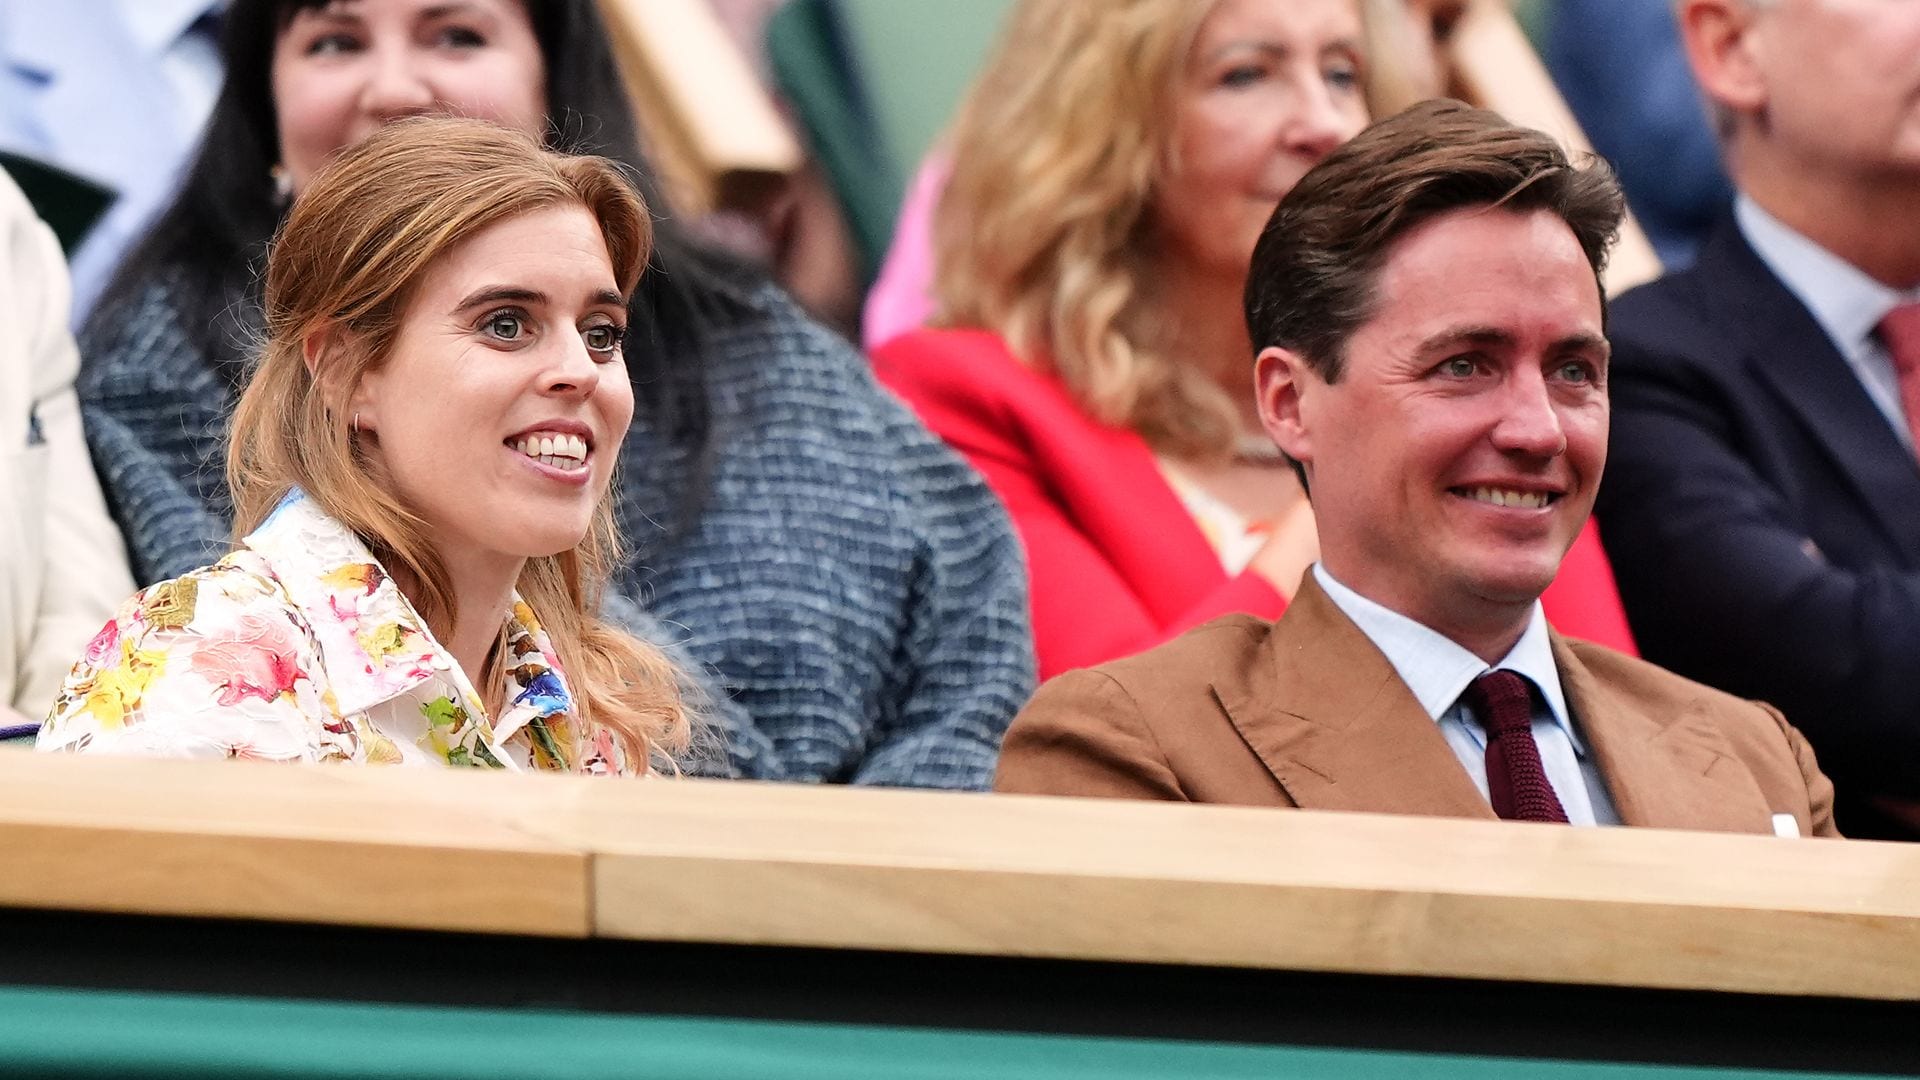 Royal couple enjoys date at Wimbledon